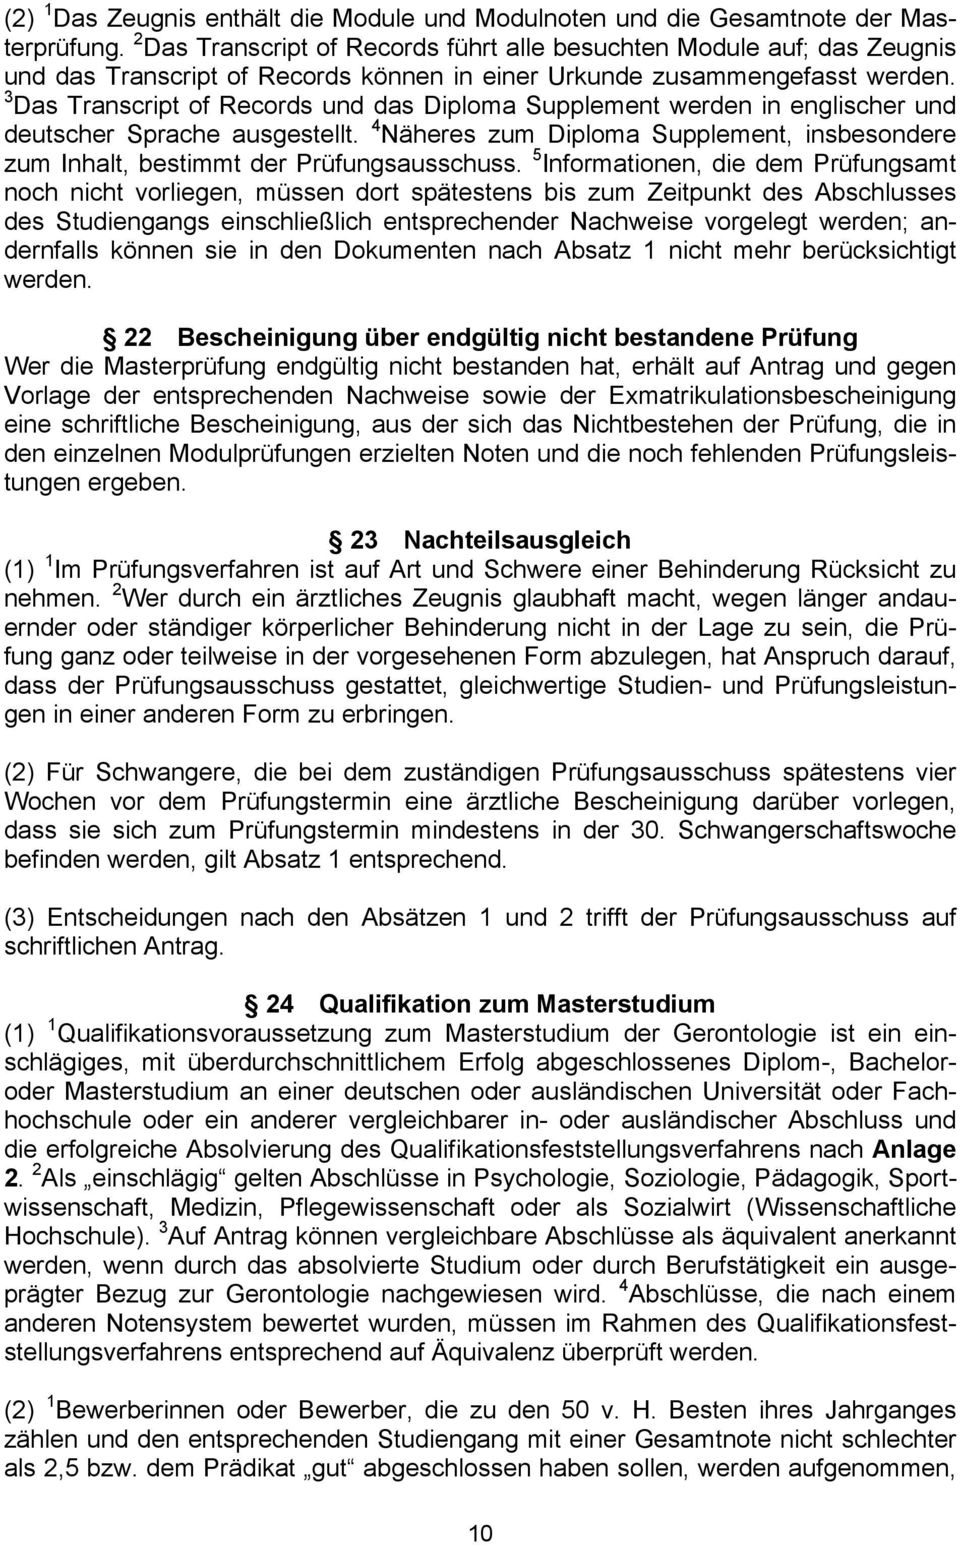 3 Das Transcript of Records und das Diploma Supplement werden in englischer und deutscher Sprache ausgestellt.